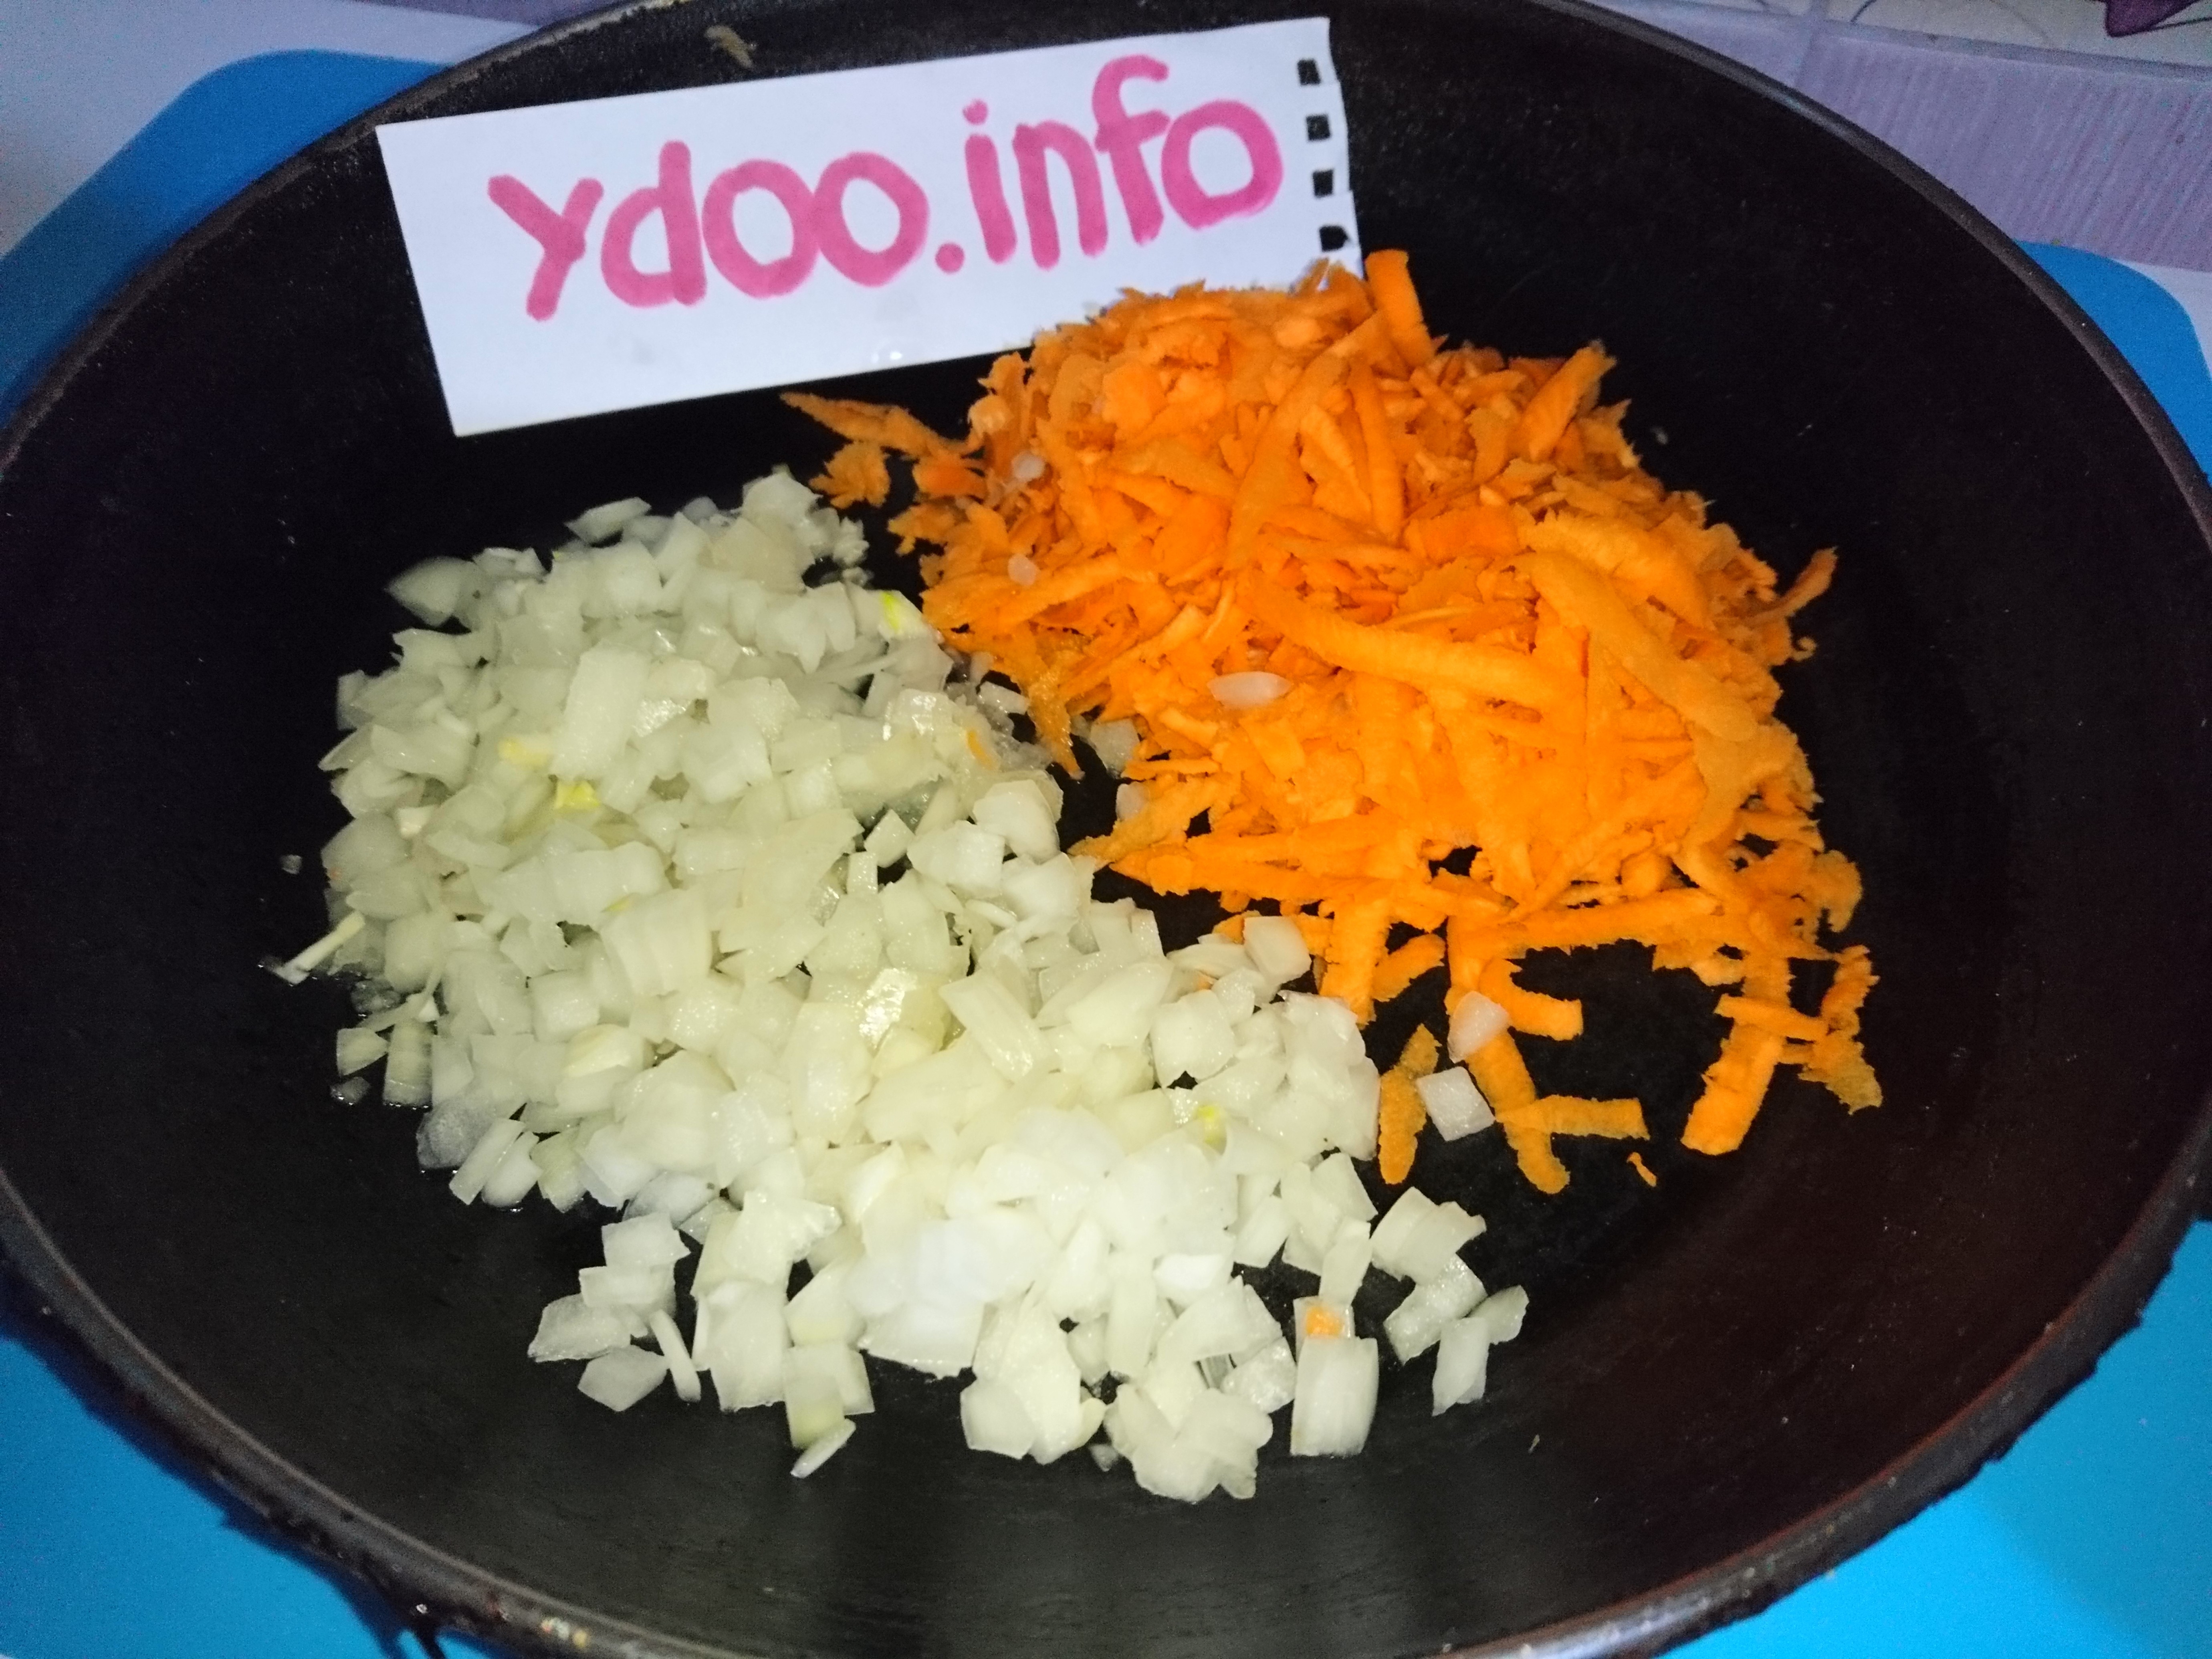 нарезанные репчатый лук и морковь в сковороде на столе